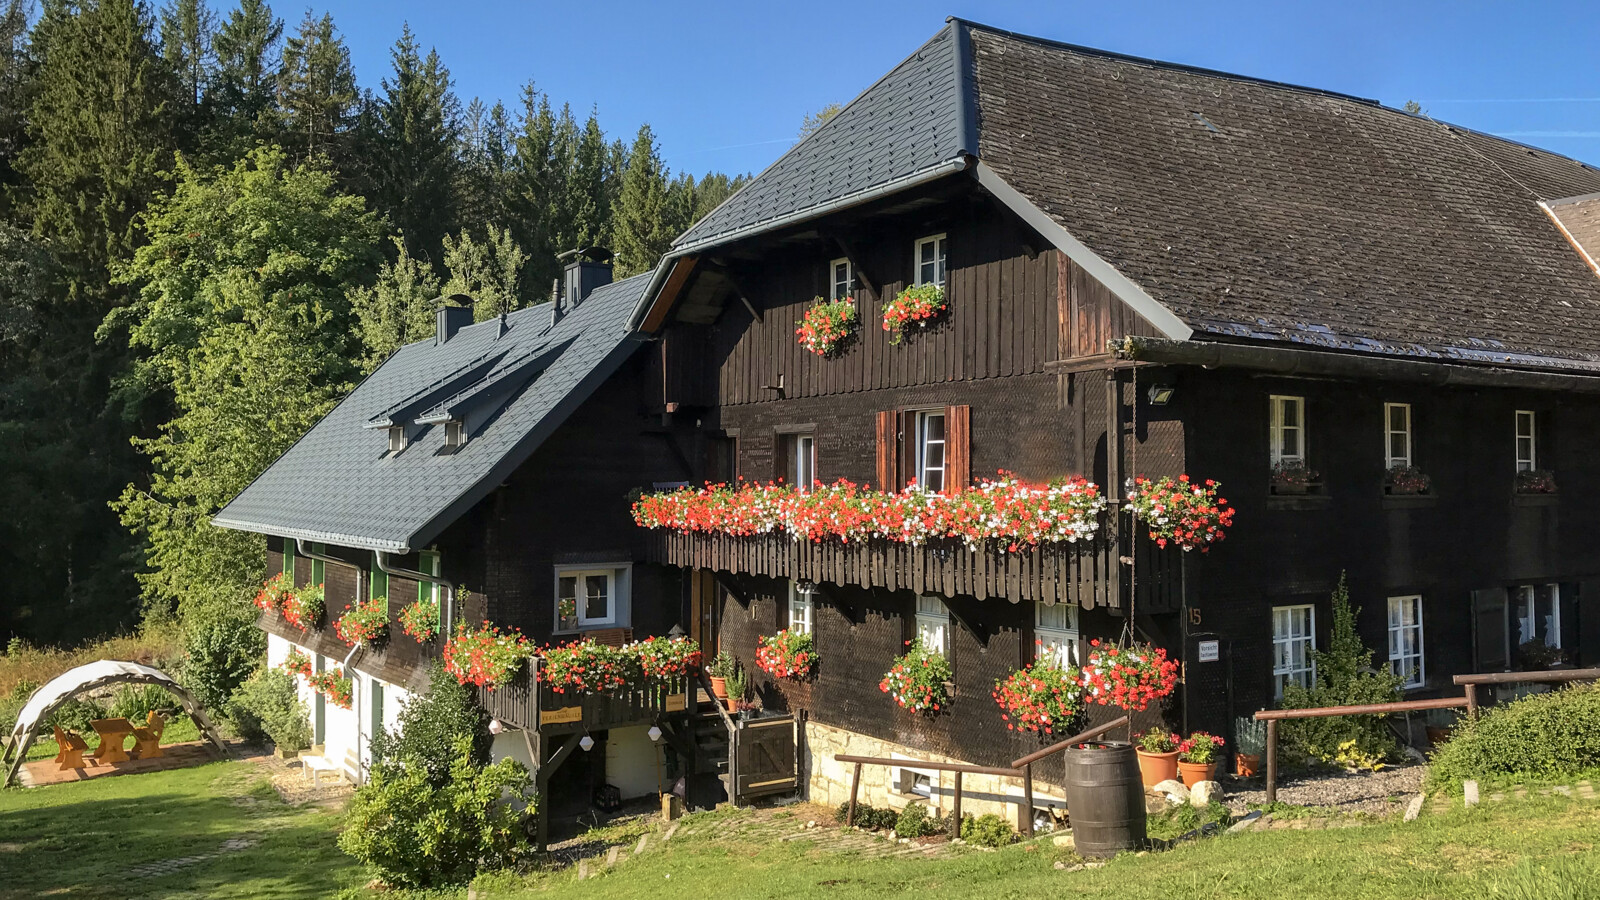 Ein Schwarzwaldhaus wie aus dem Bilderbuch - so präsentiert sich das Strittmattergut bei Schluchsee.